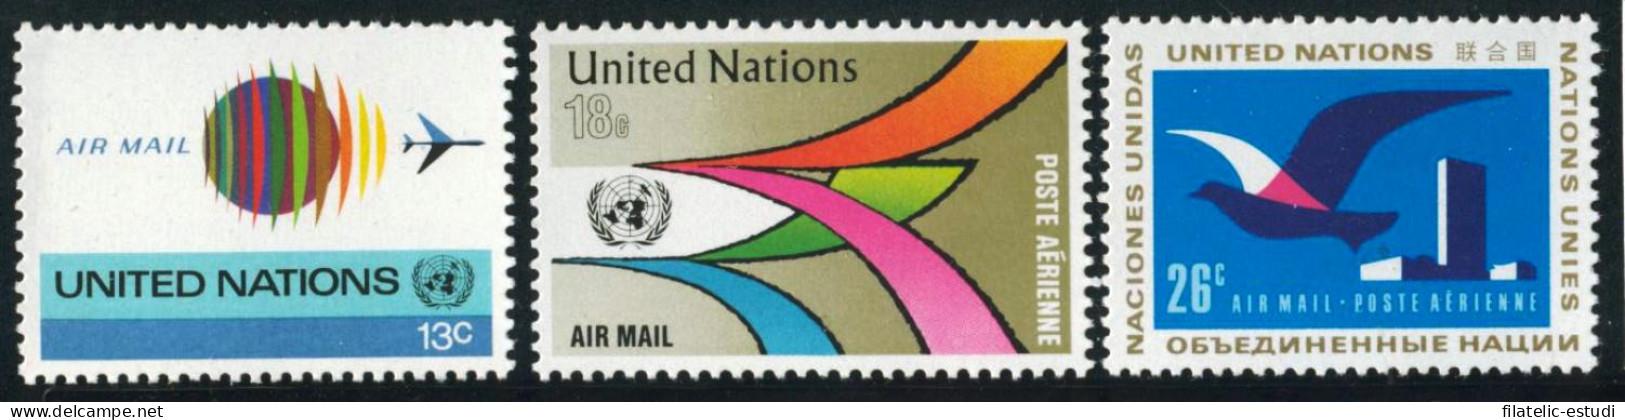 FAU2/S Naciones Unidas  New York  Nº A 19/21  1974  Serie Aves Avion Símbolo L - Luchtpost